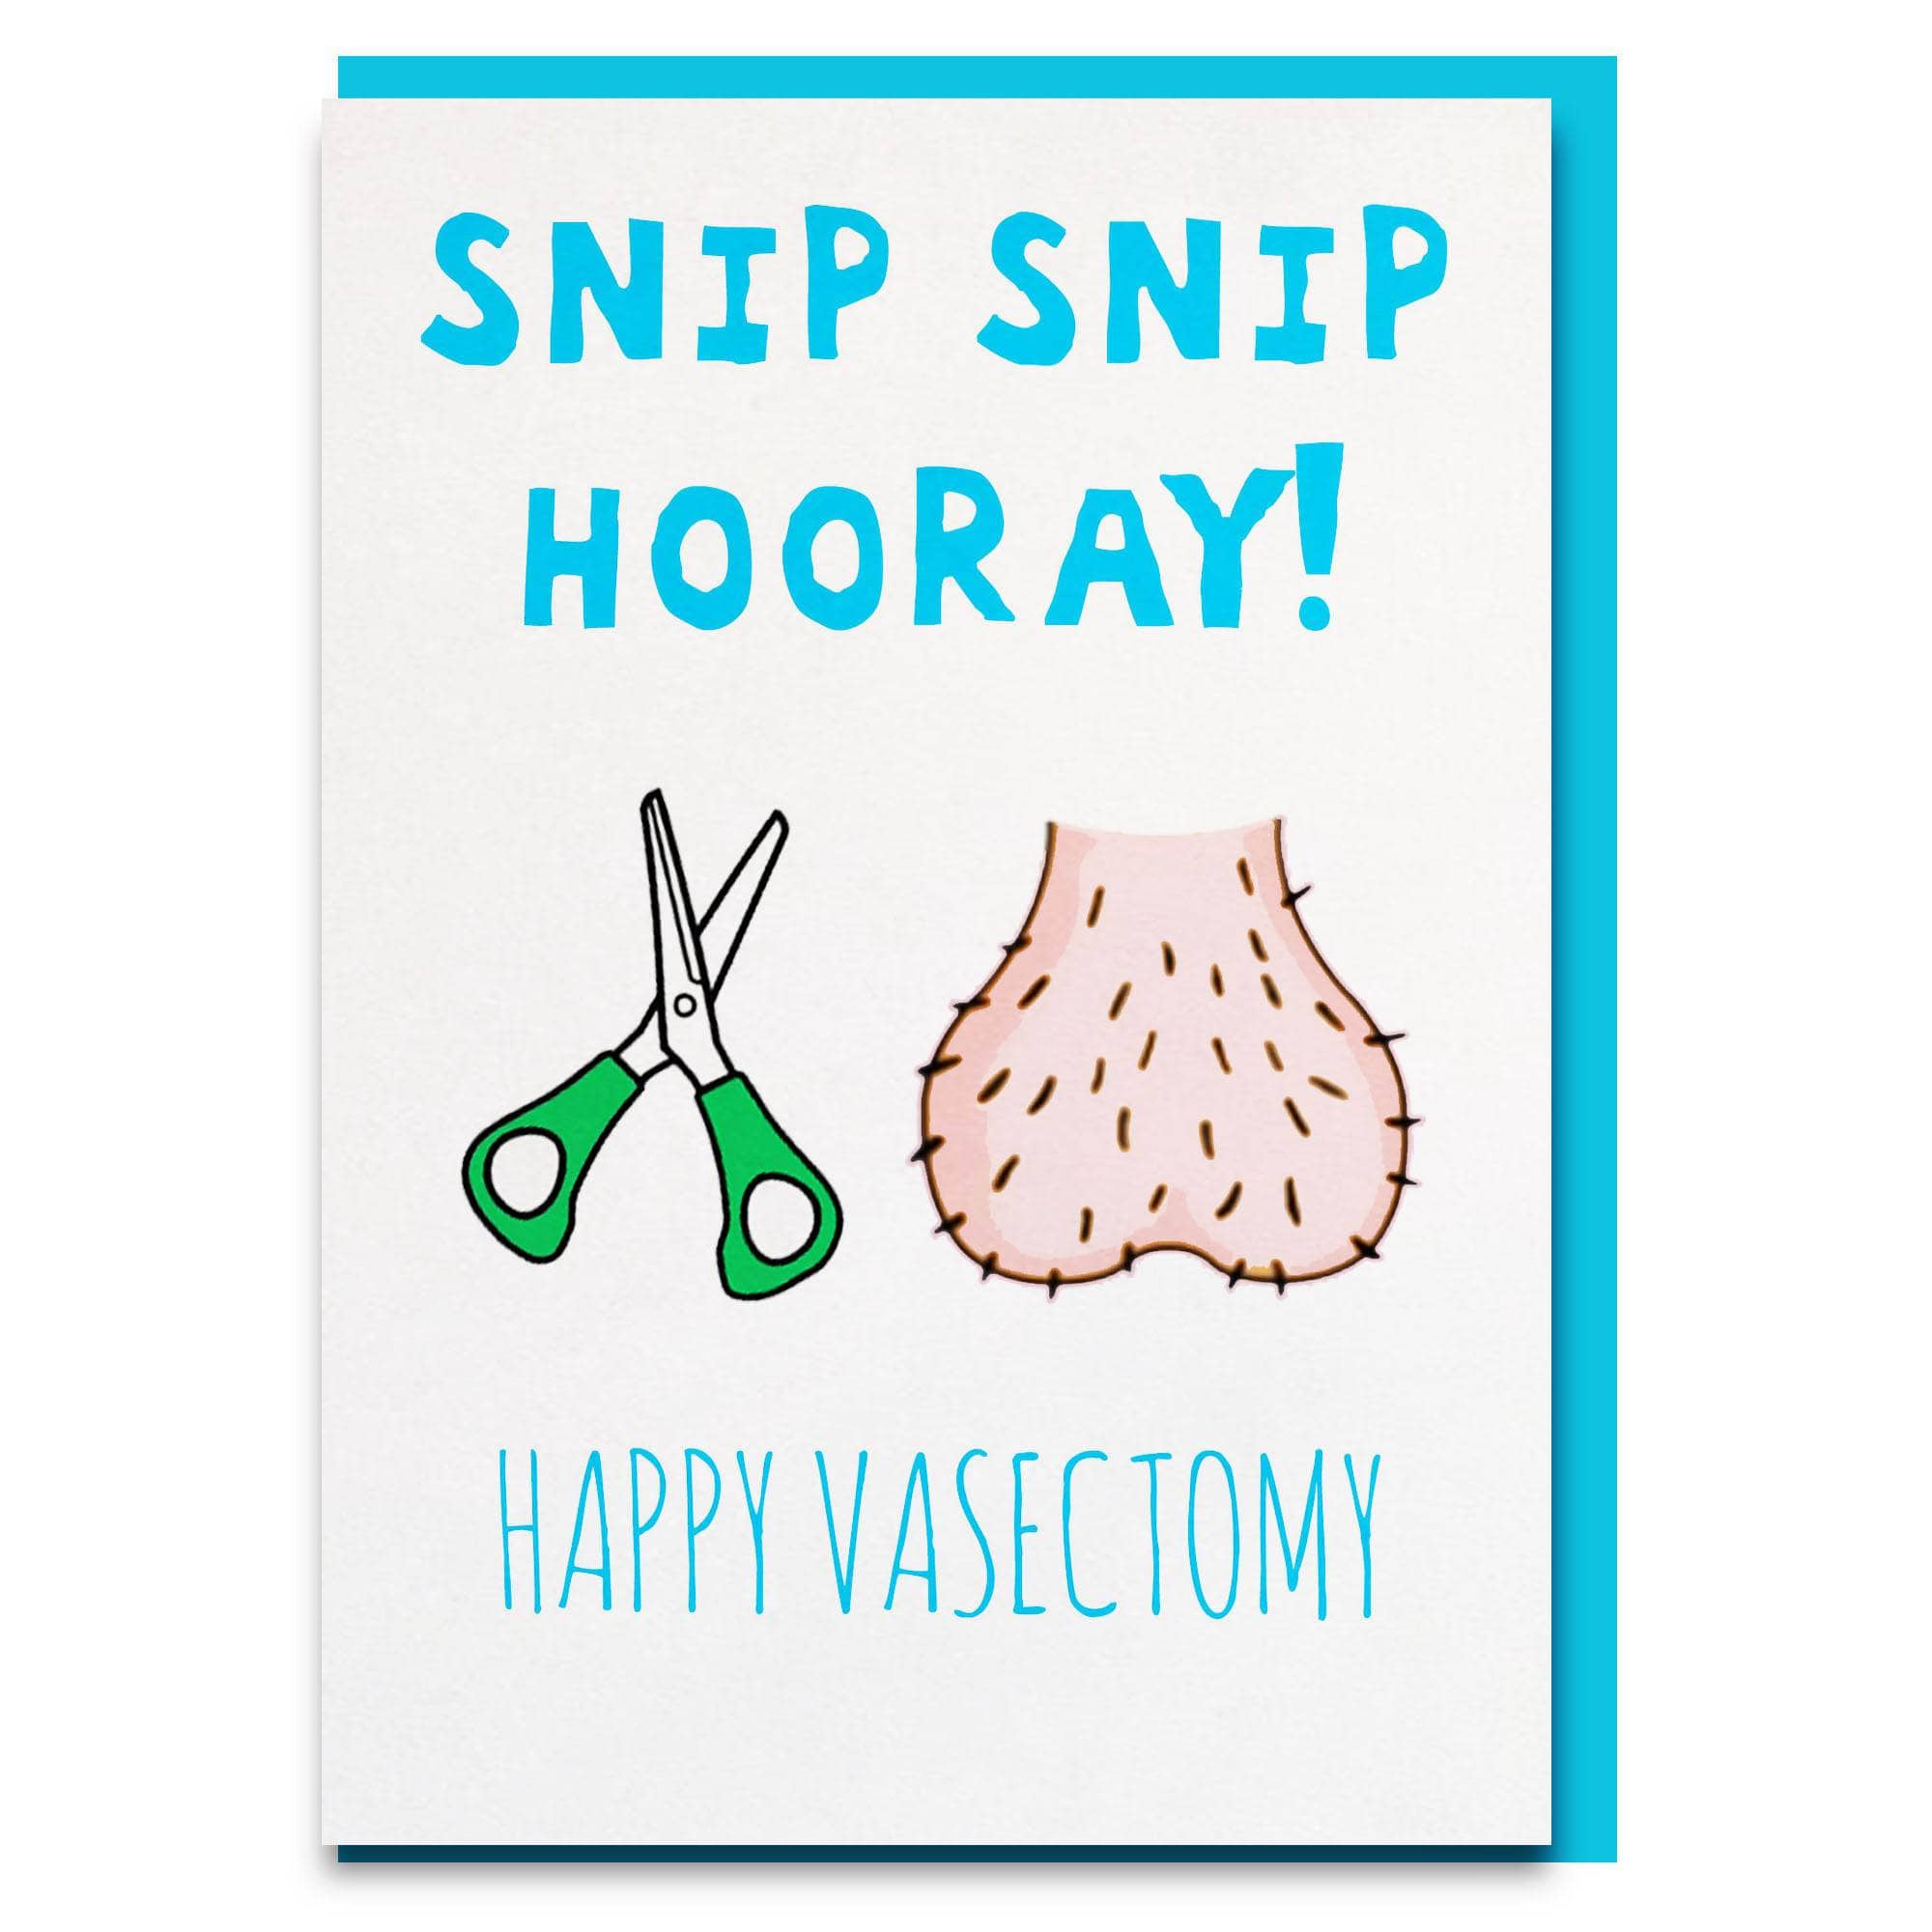 Funny vasectomy card for partner, boyfriend or husband. 